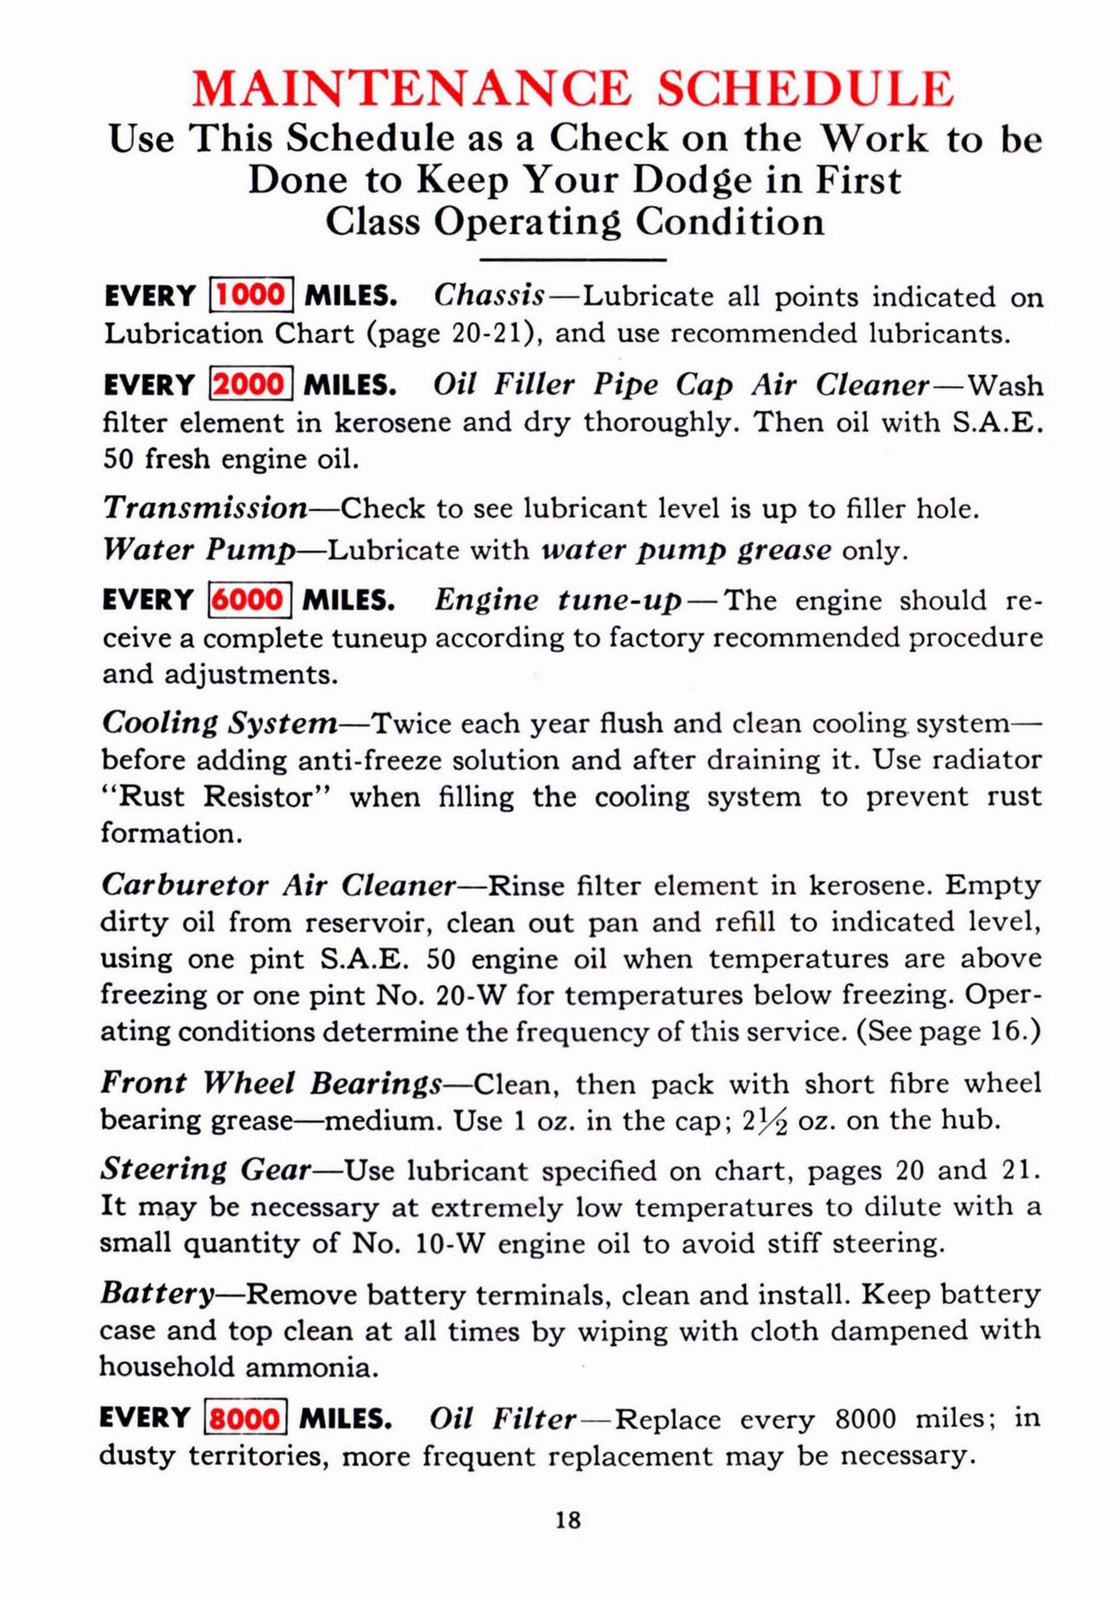 n_1941 Dodge Owners Manual-18.jpg